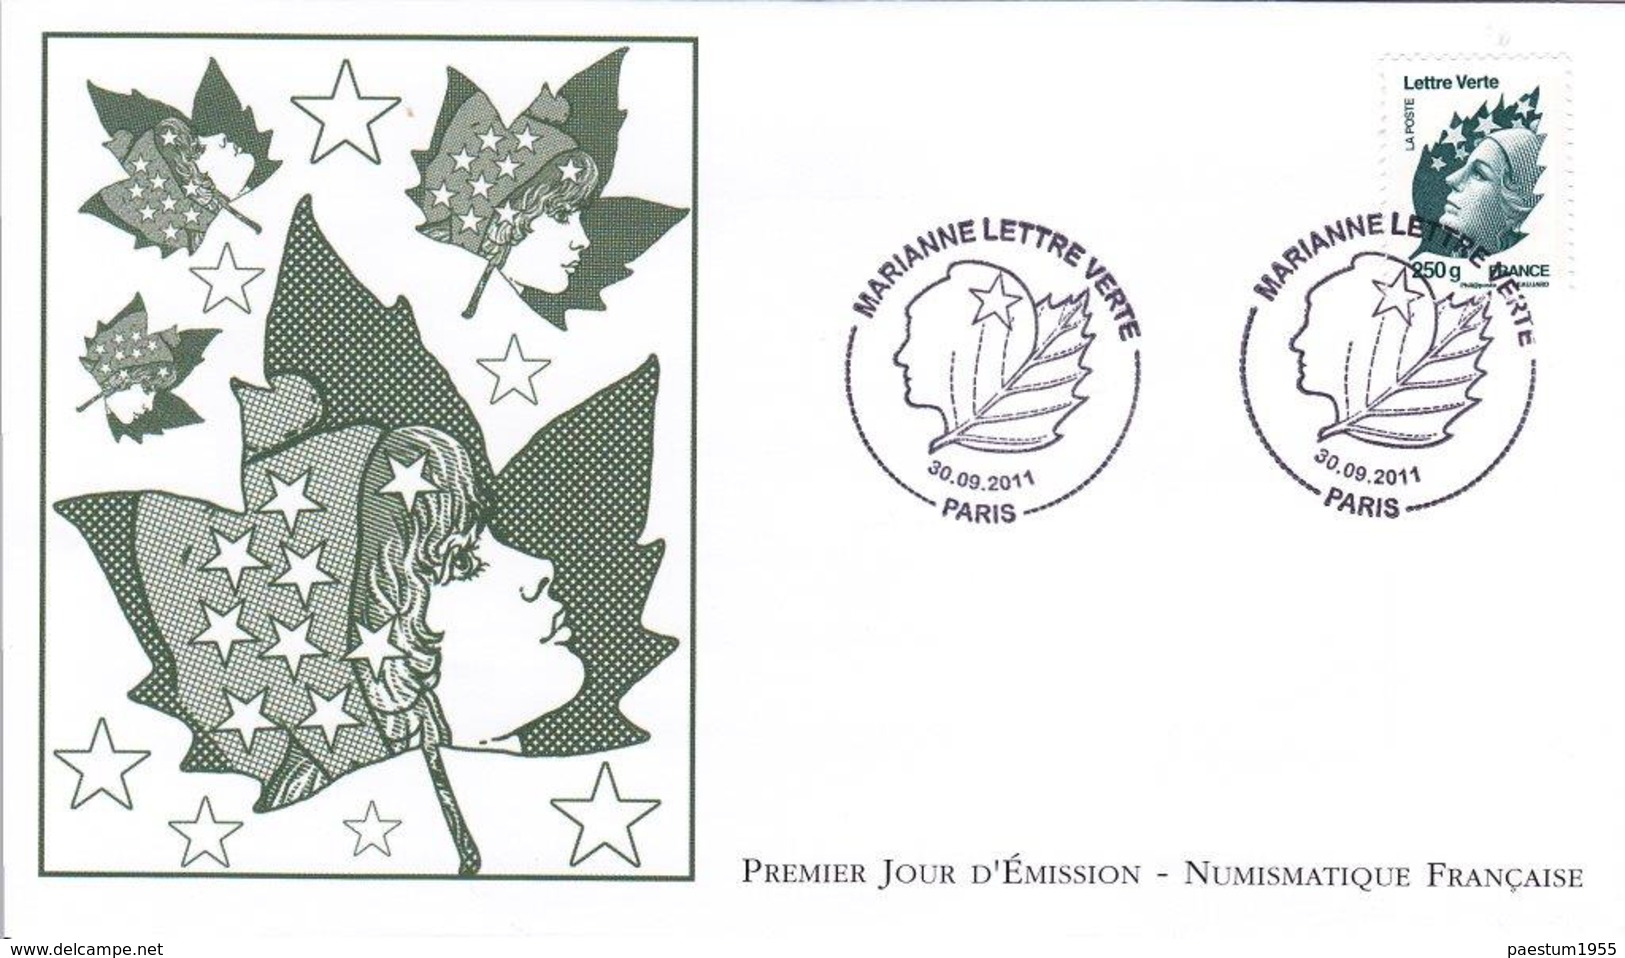 set de 4 FDC enveloppe premier jour FRANCE 2011 Série MARIANNE de Beaujard complète  lettre verte 2011